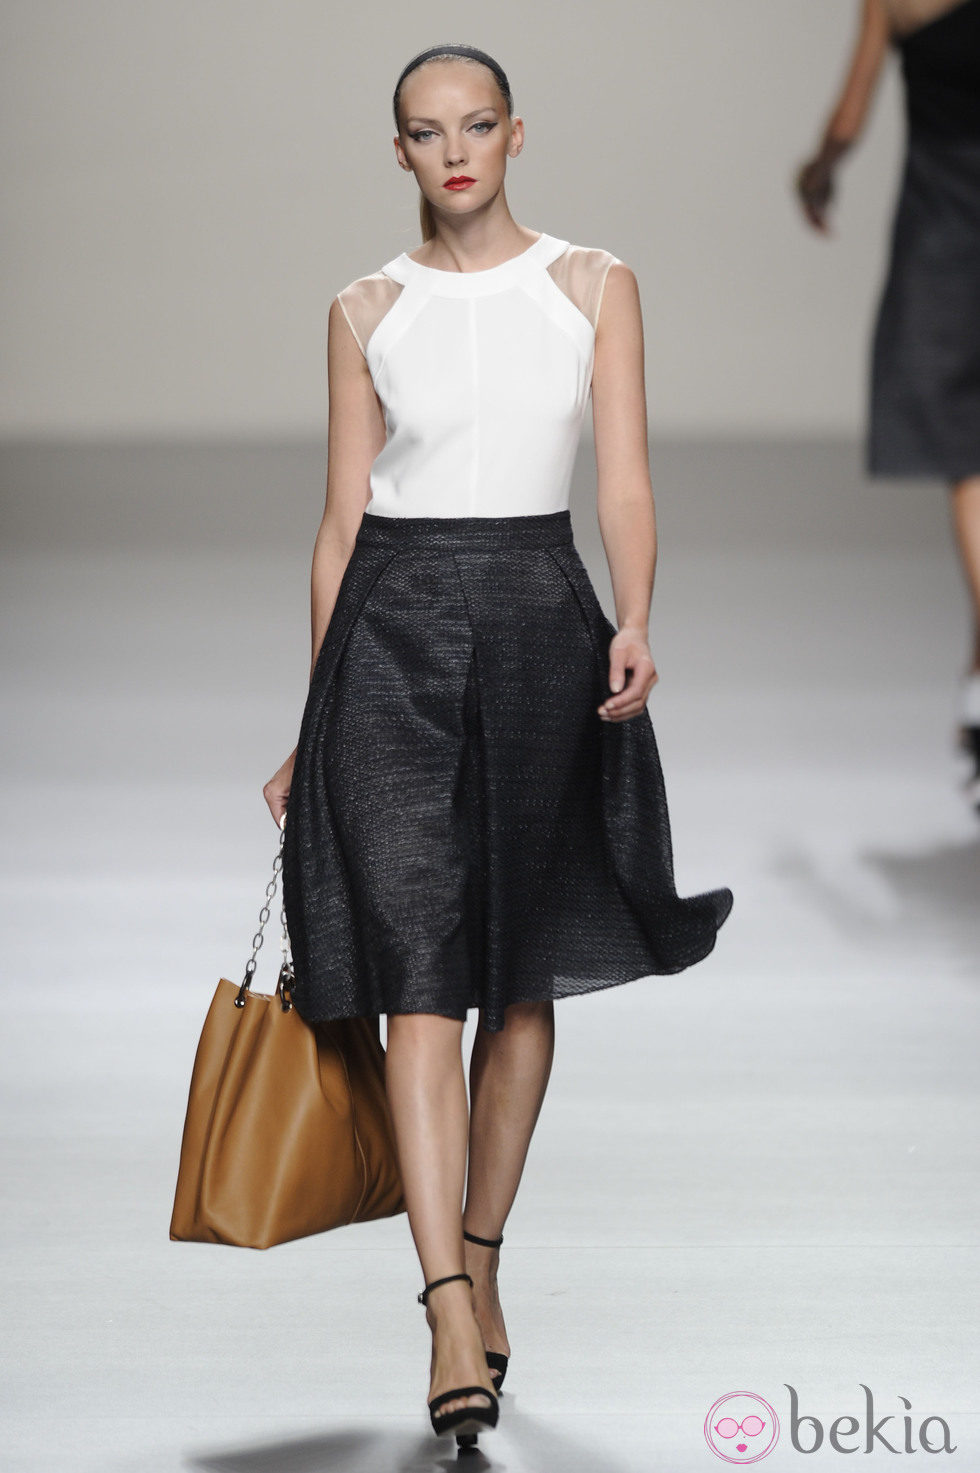 Falda negra y maxibolso marrón de la colección primavera-verano 2013 de Roberto Torretta